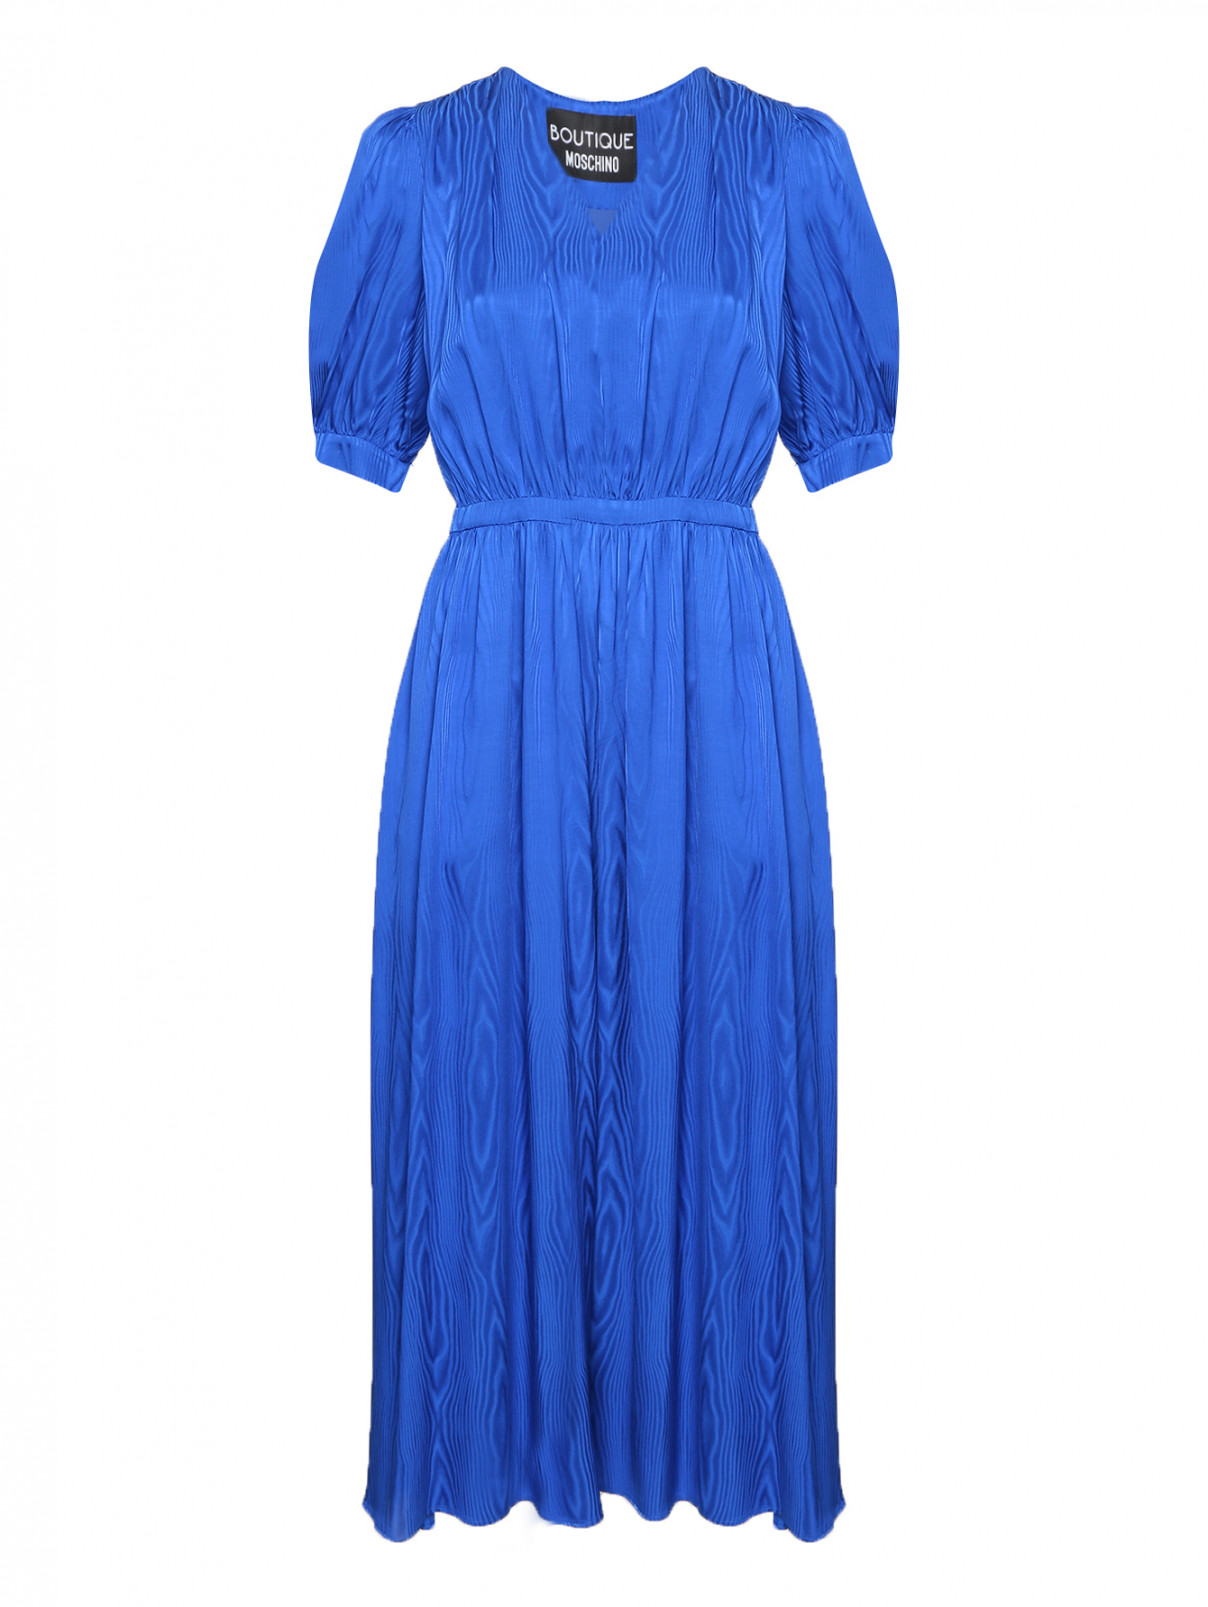 Платье-миди с узором Moschino Boutique  –  Общий вид  – Цвет:  Синий